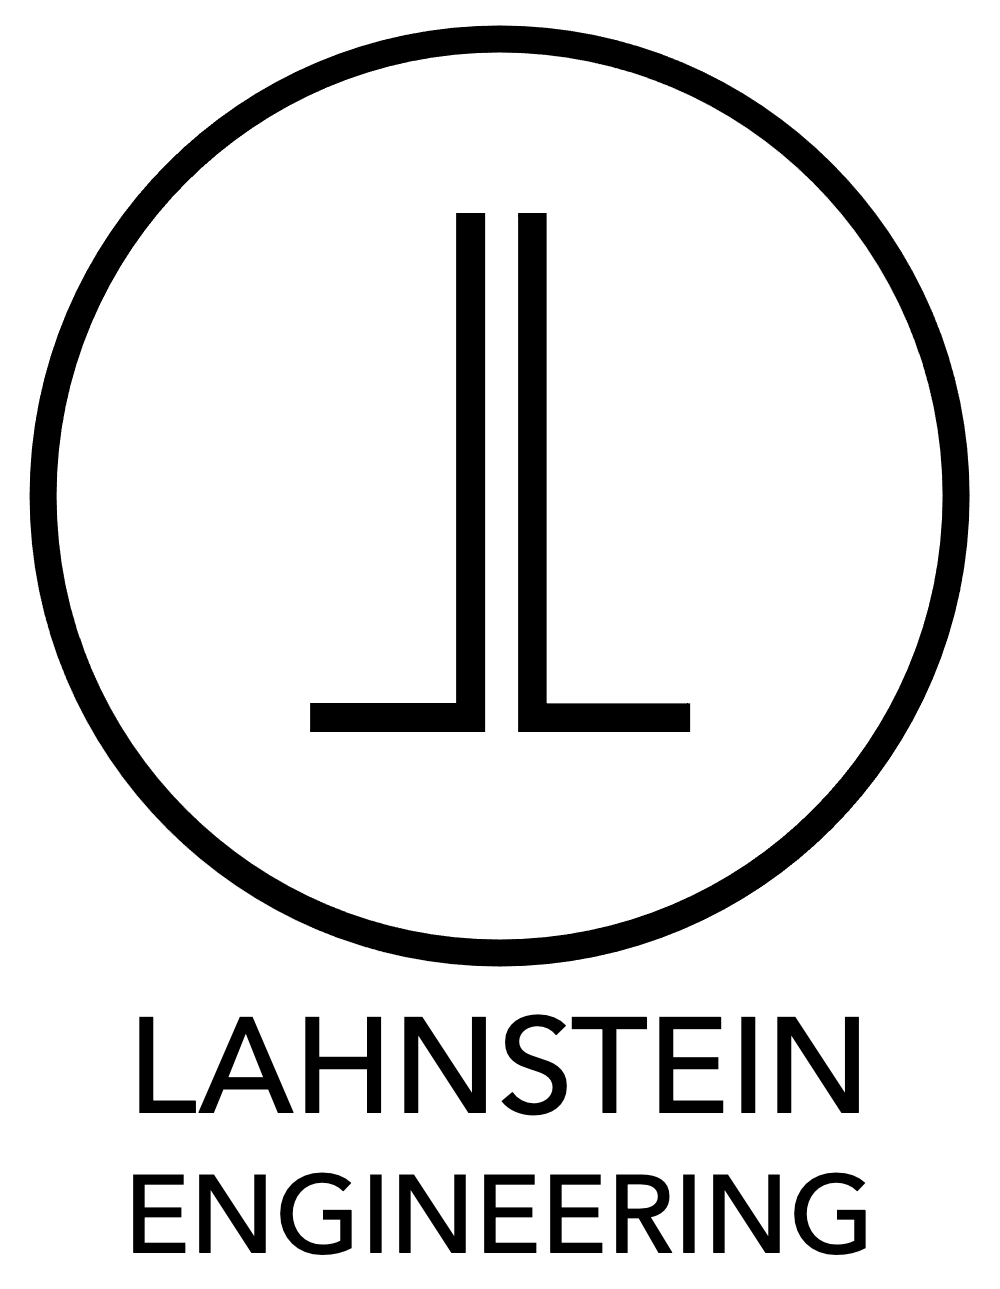 Lahnstein Engineering